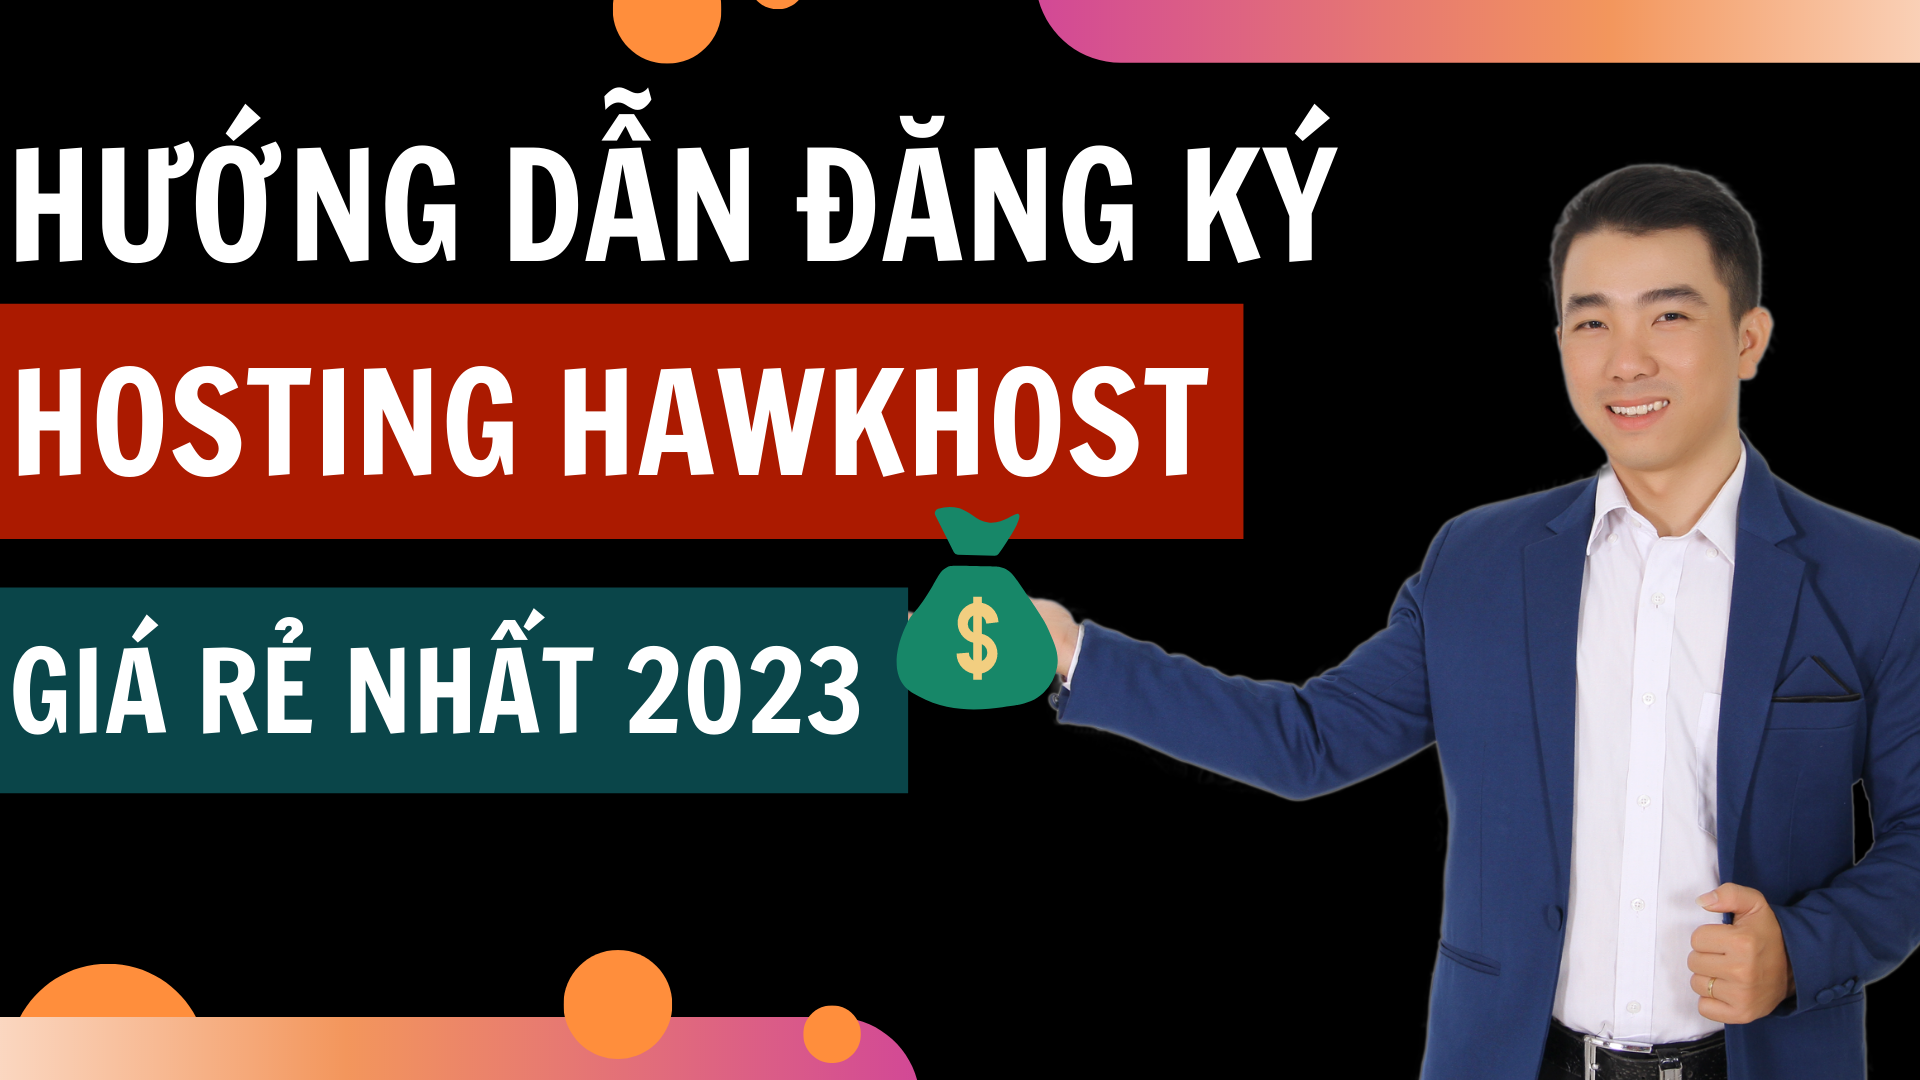 hướng dẫn đăng ký hosting hawkhost